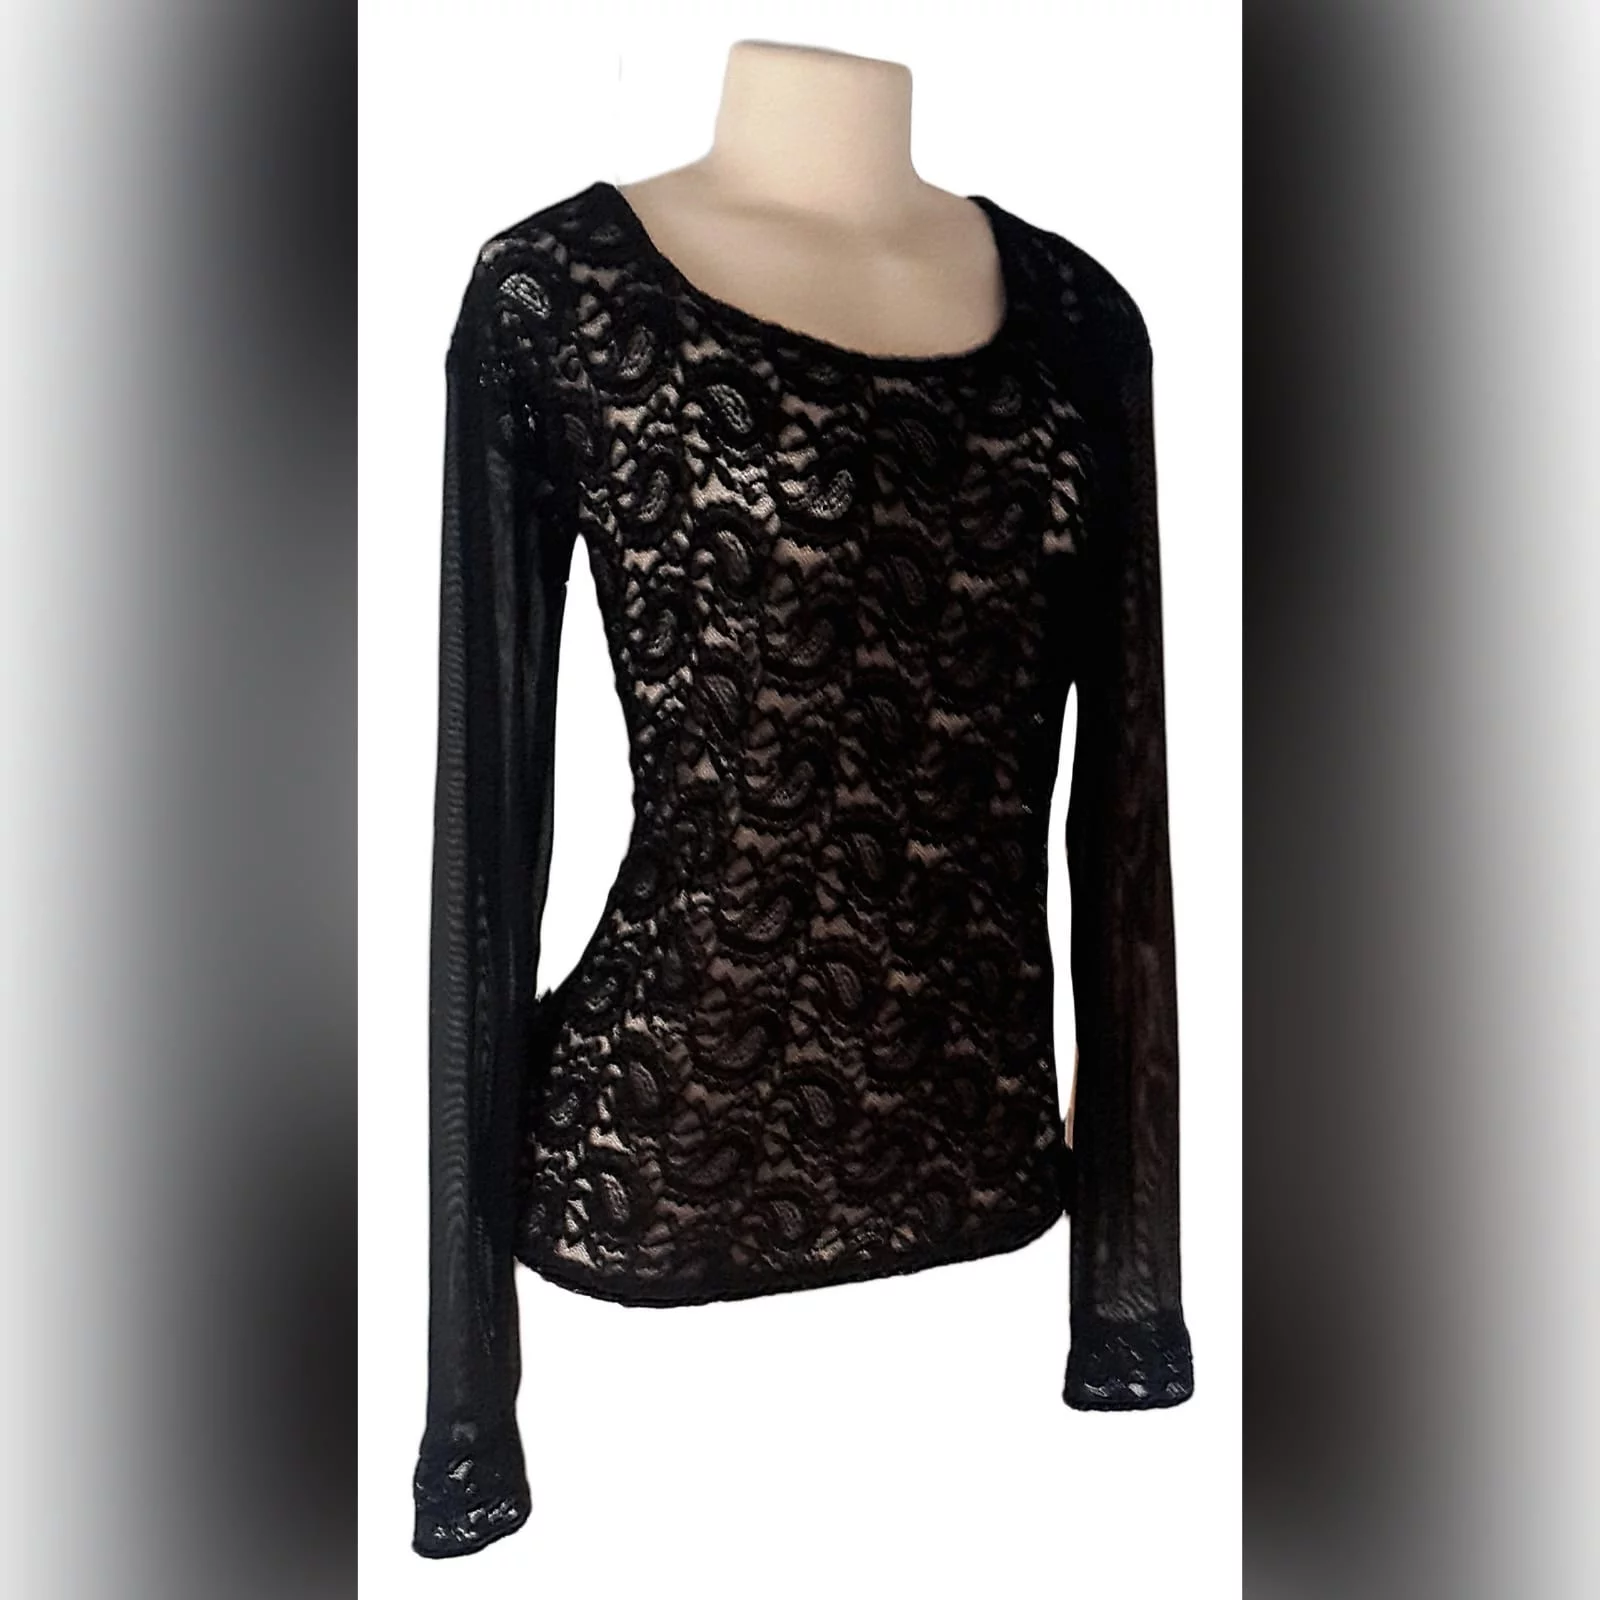 Black Sheer Lace Long Sleeve Top - Marisela Veludo - Fashion Designer